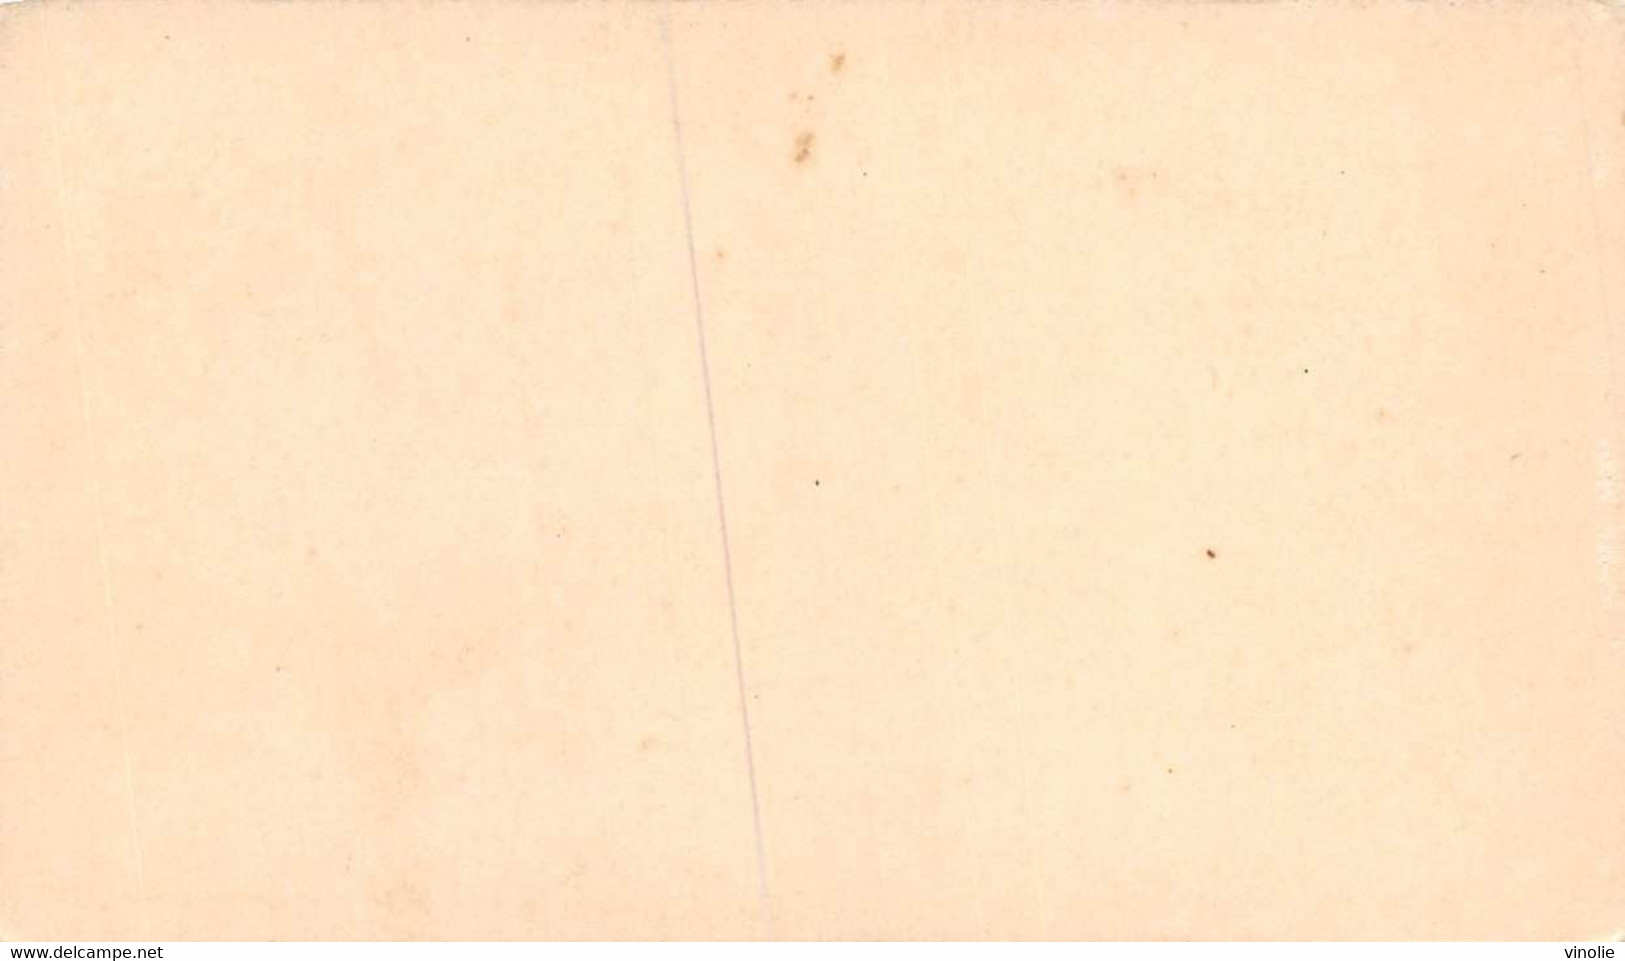 P.21-FO-1552 : IMAGE. CHROMOLITHOGRAPHIE. THEME MONNAIE. LOUIS D'OR LOUIS XV. 1765 - Non Classés